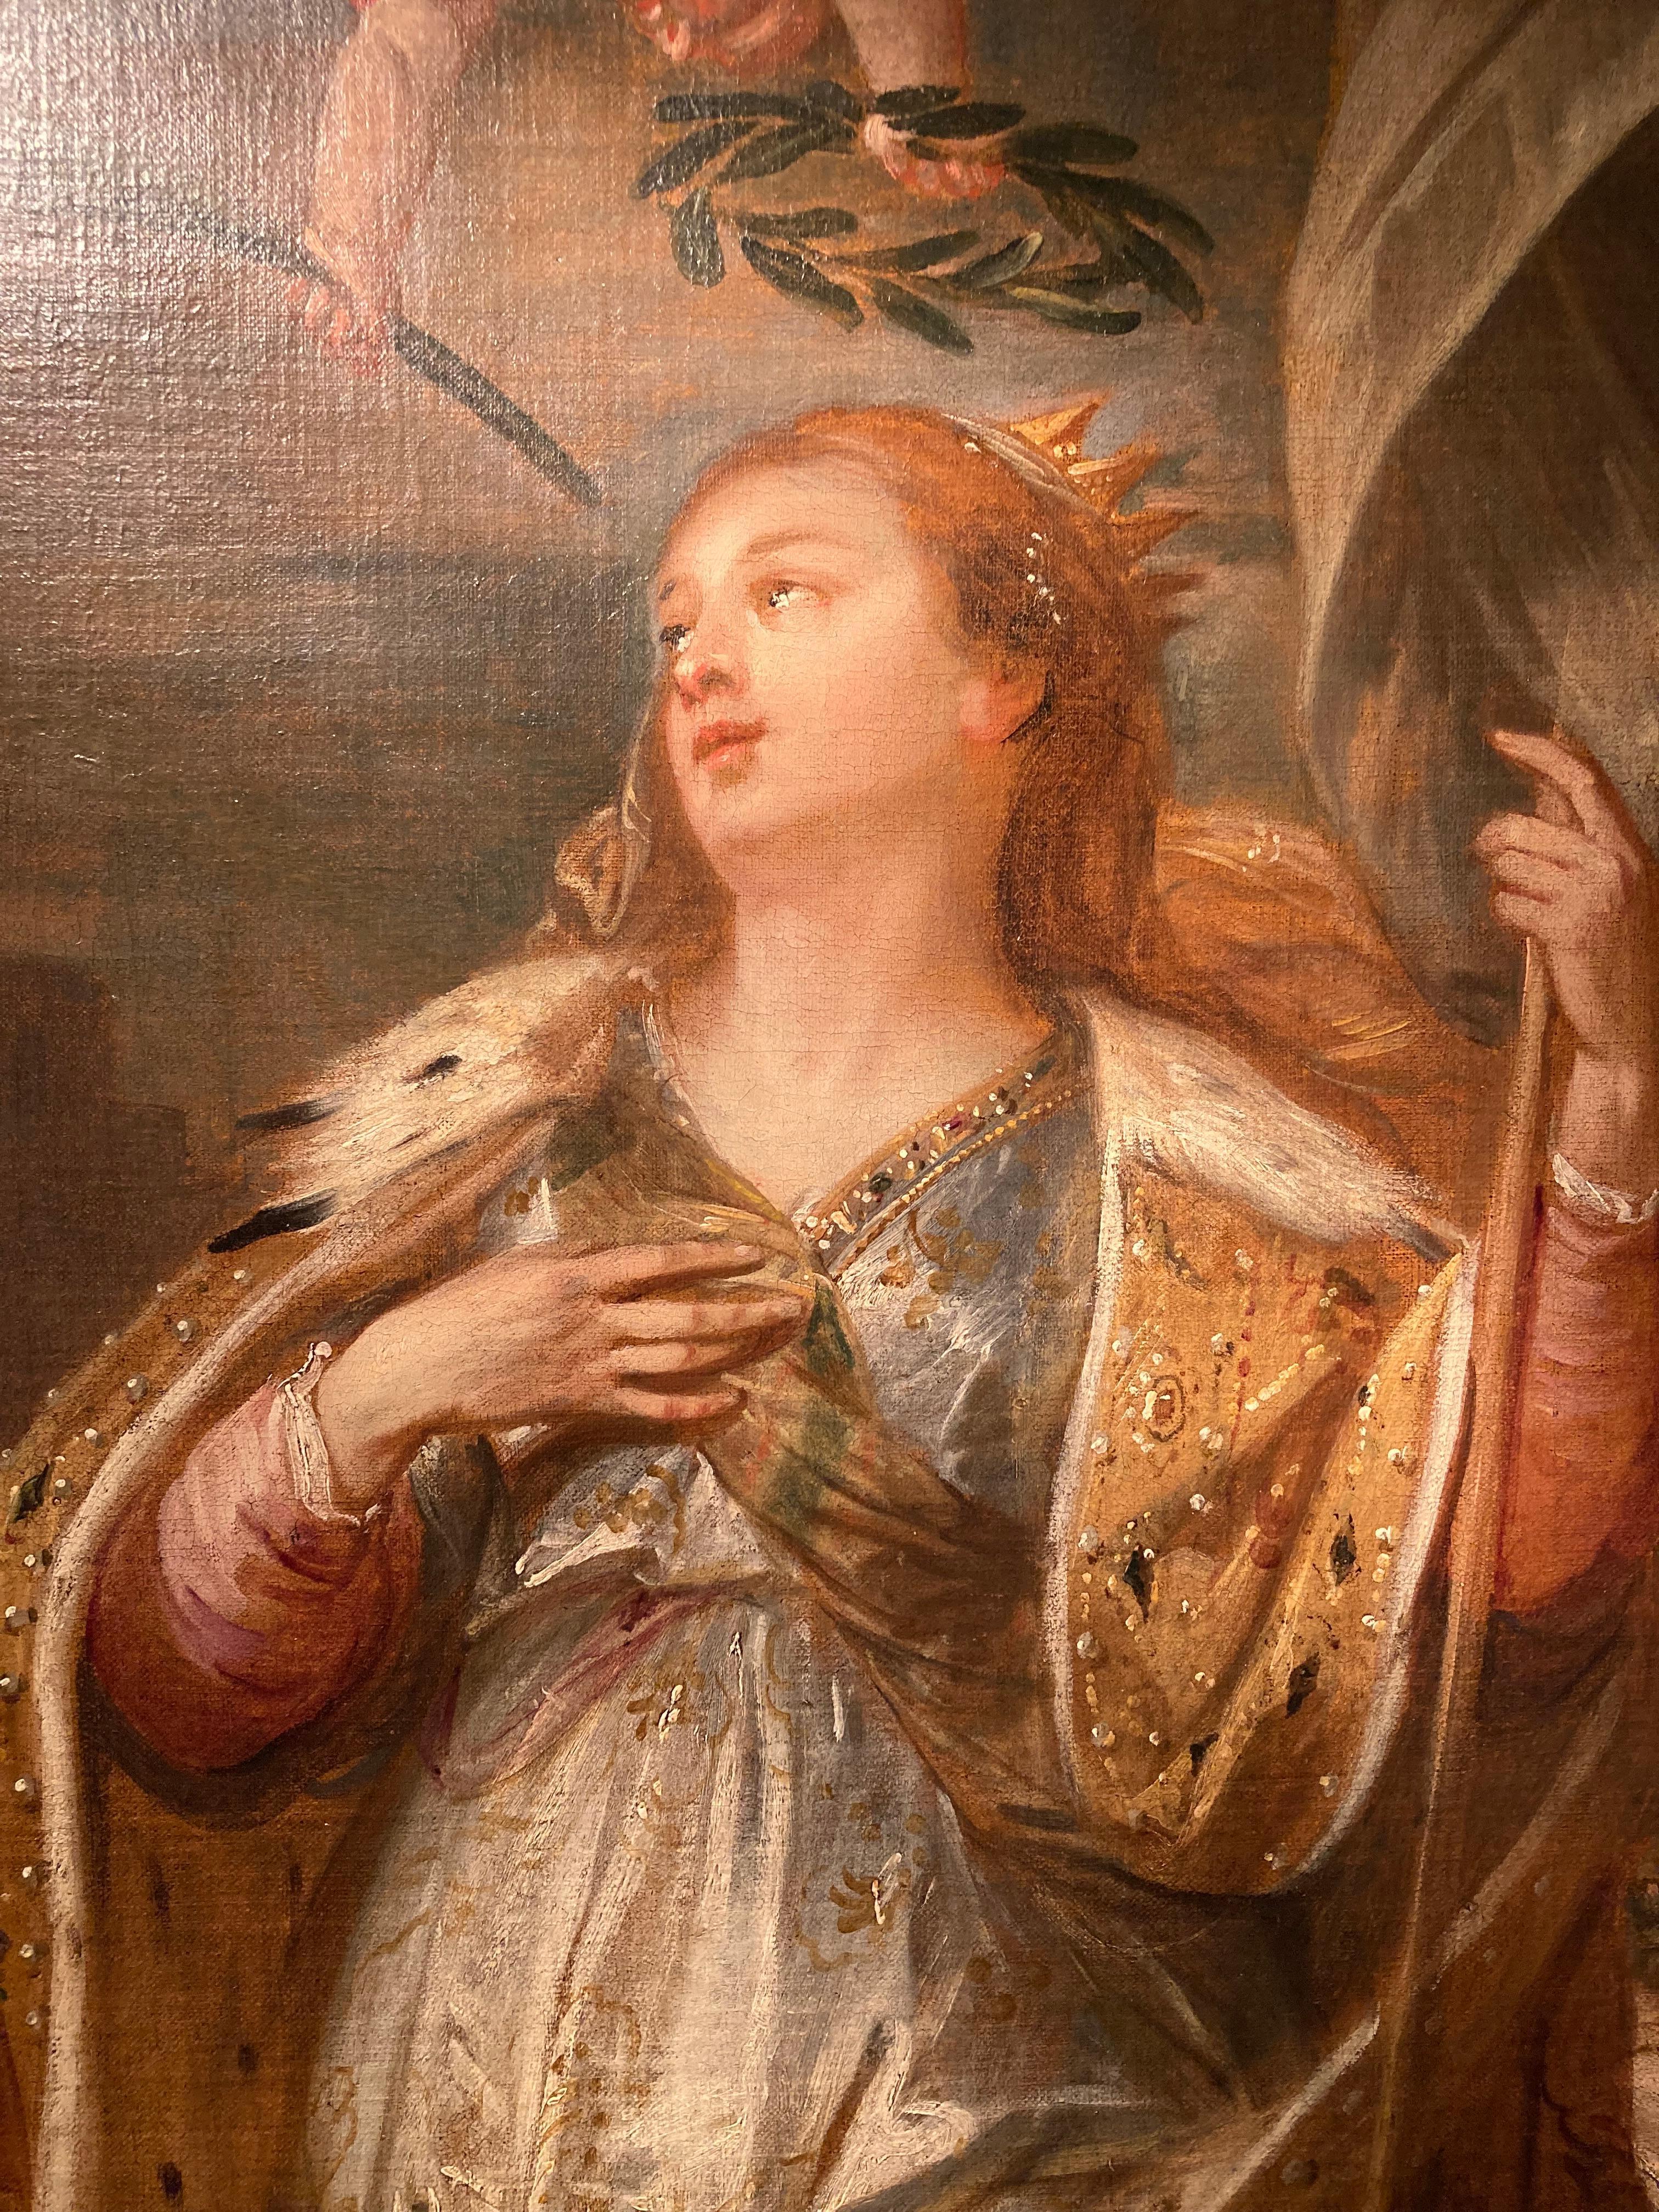 Johann Boeckhorst (Münster 1604 - Antwerpen 1668)
Heilige Ursula
Öl auf Leinwand, 112 x 86 cm

Provenienz: 
New York, Christe's, 20.3.1981, Los 88 (wie Van Diepenbeeck's circle)

Das vorliegende Gemälde wurde erst vor kurzem wiederentdeckt. Es war